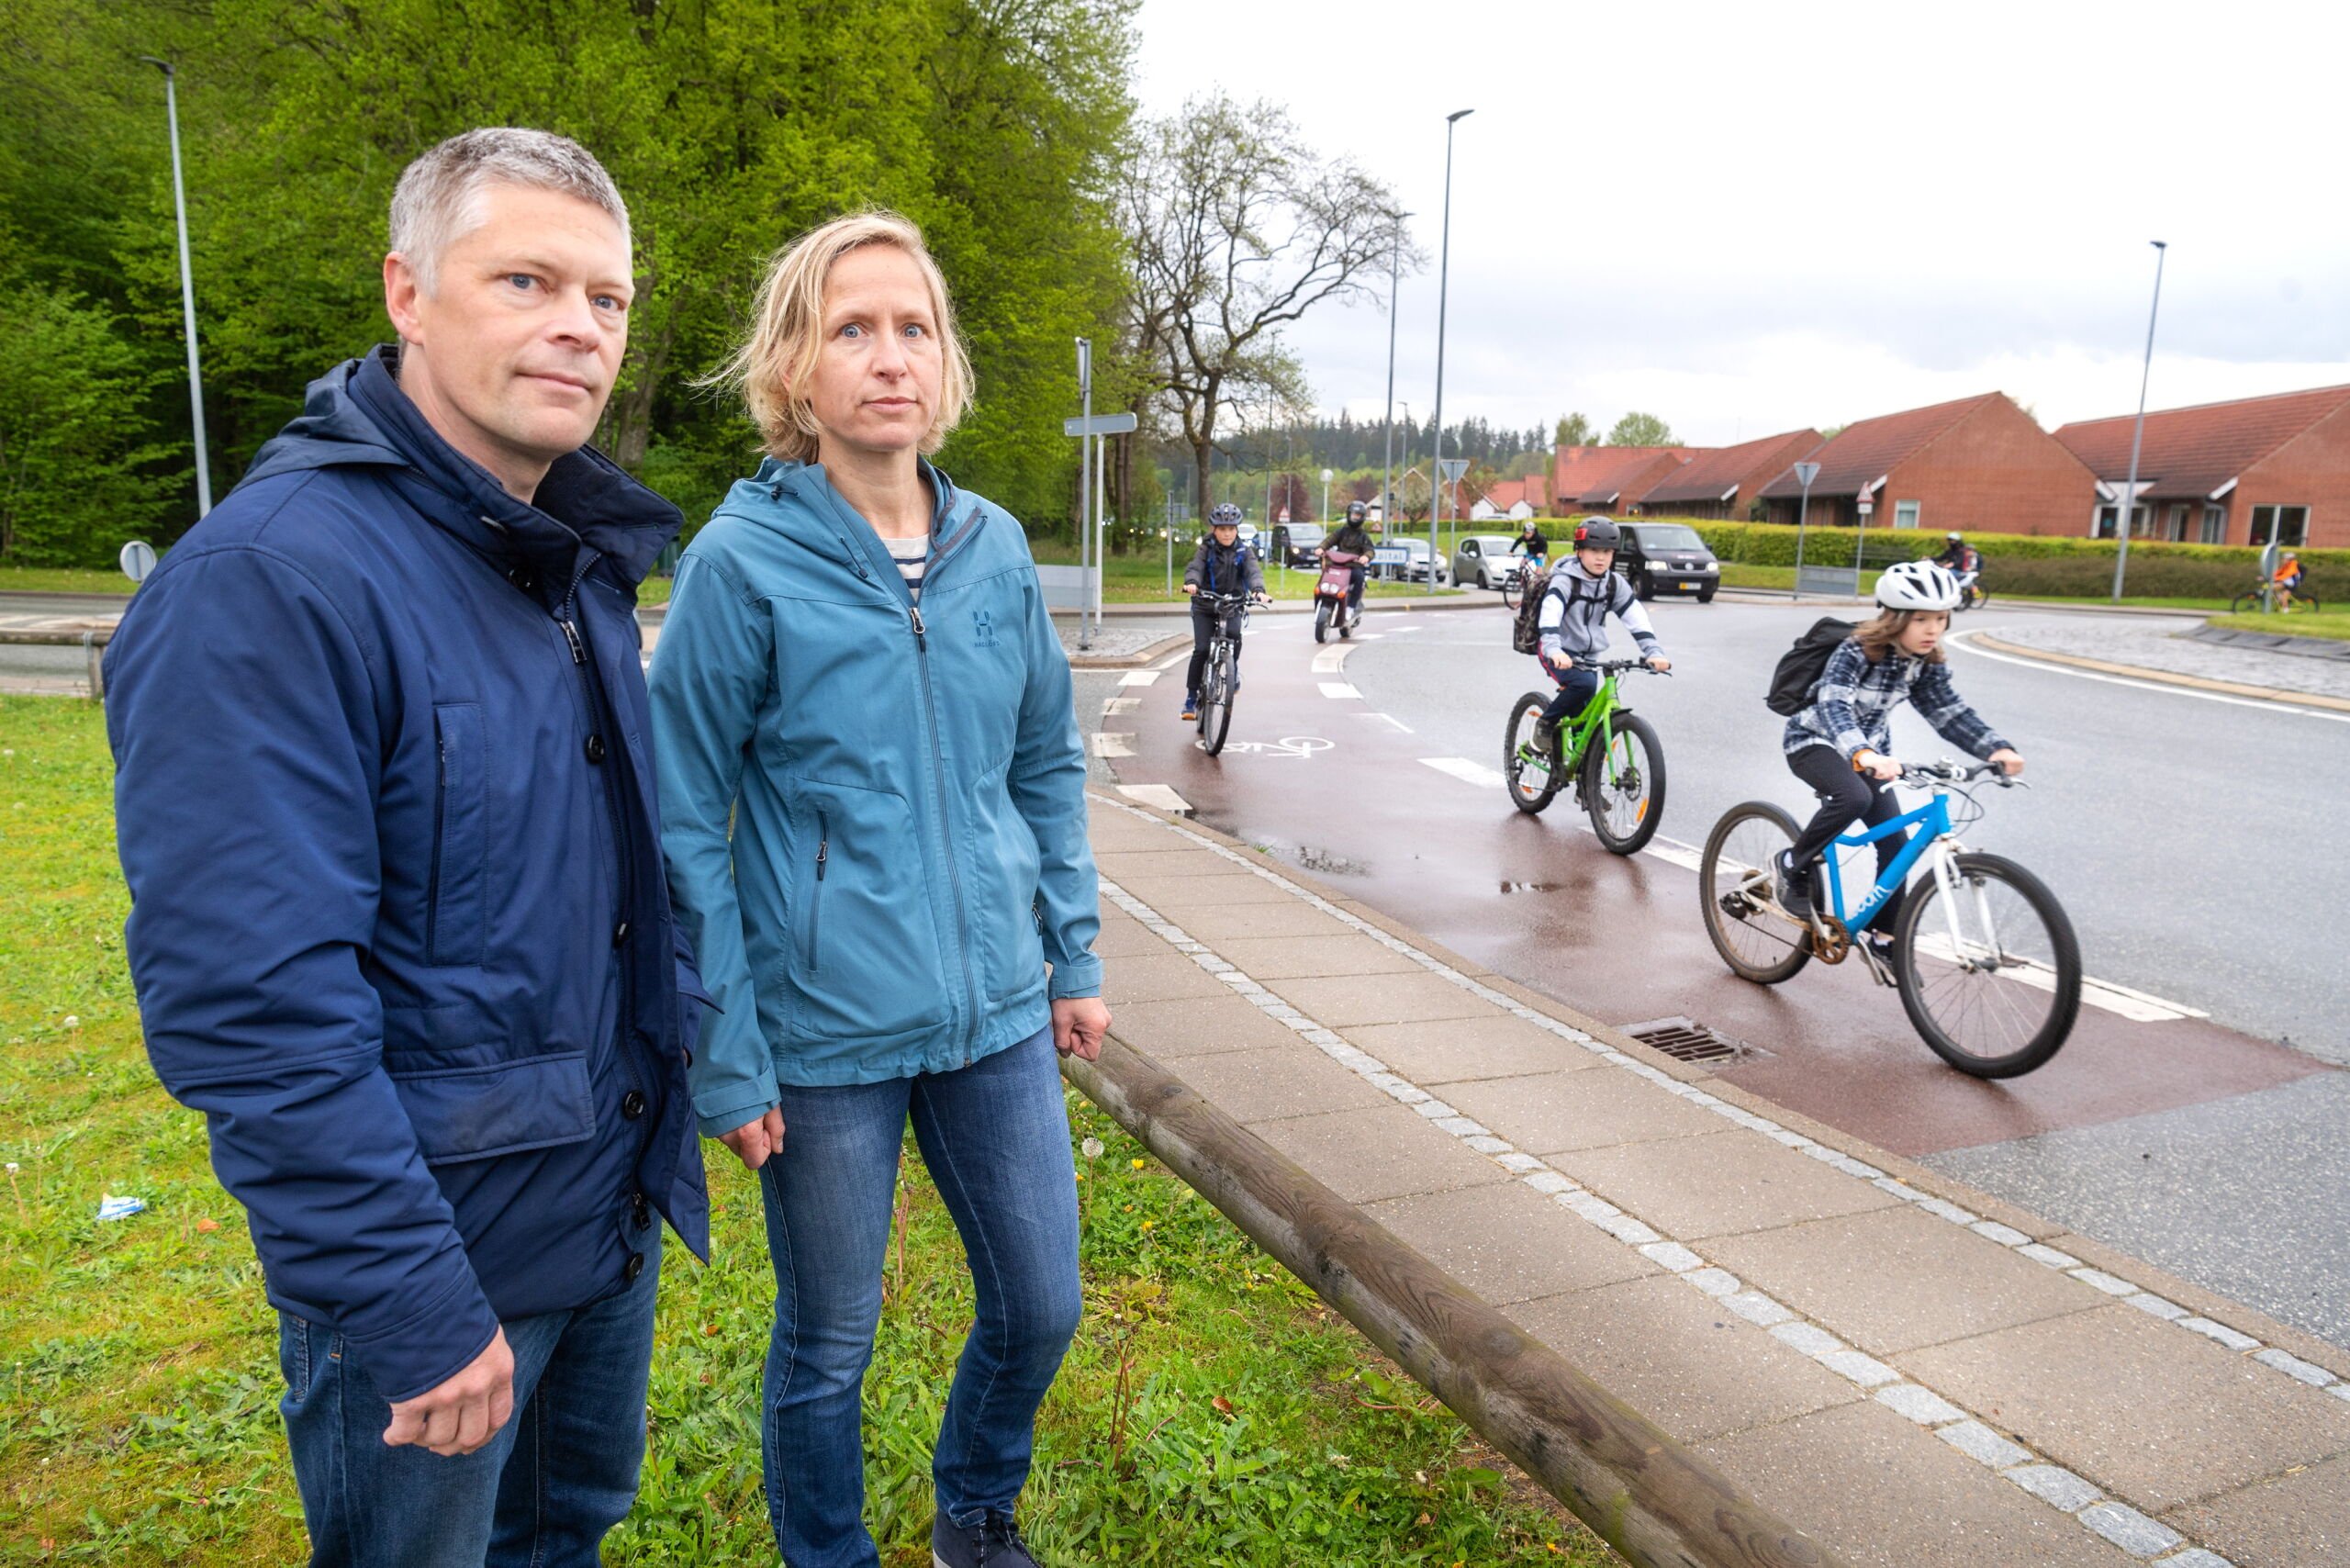 Morten og Barbara er bange for at lade deres børn cykle i skole